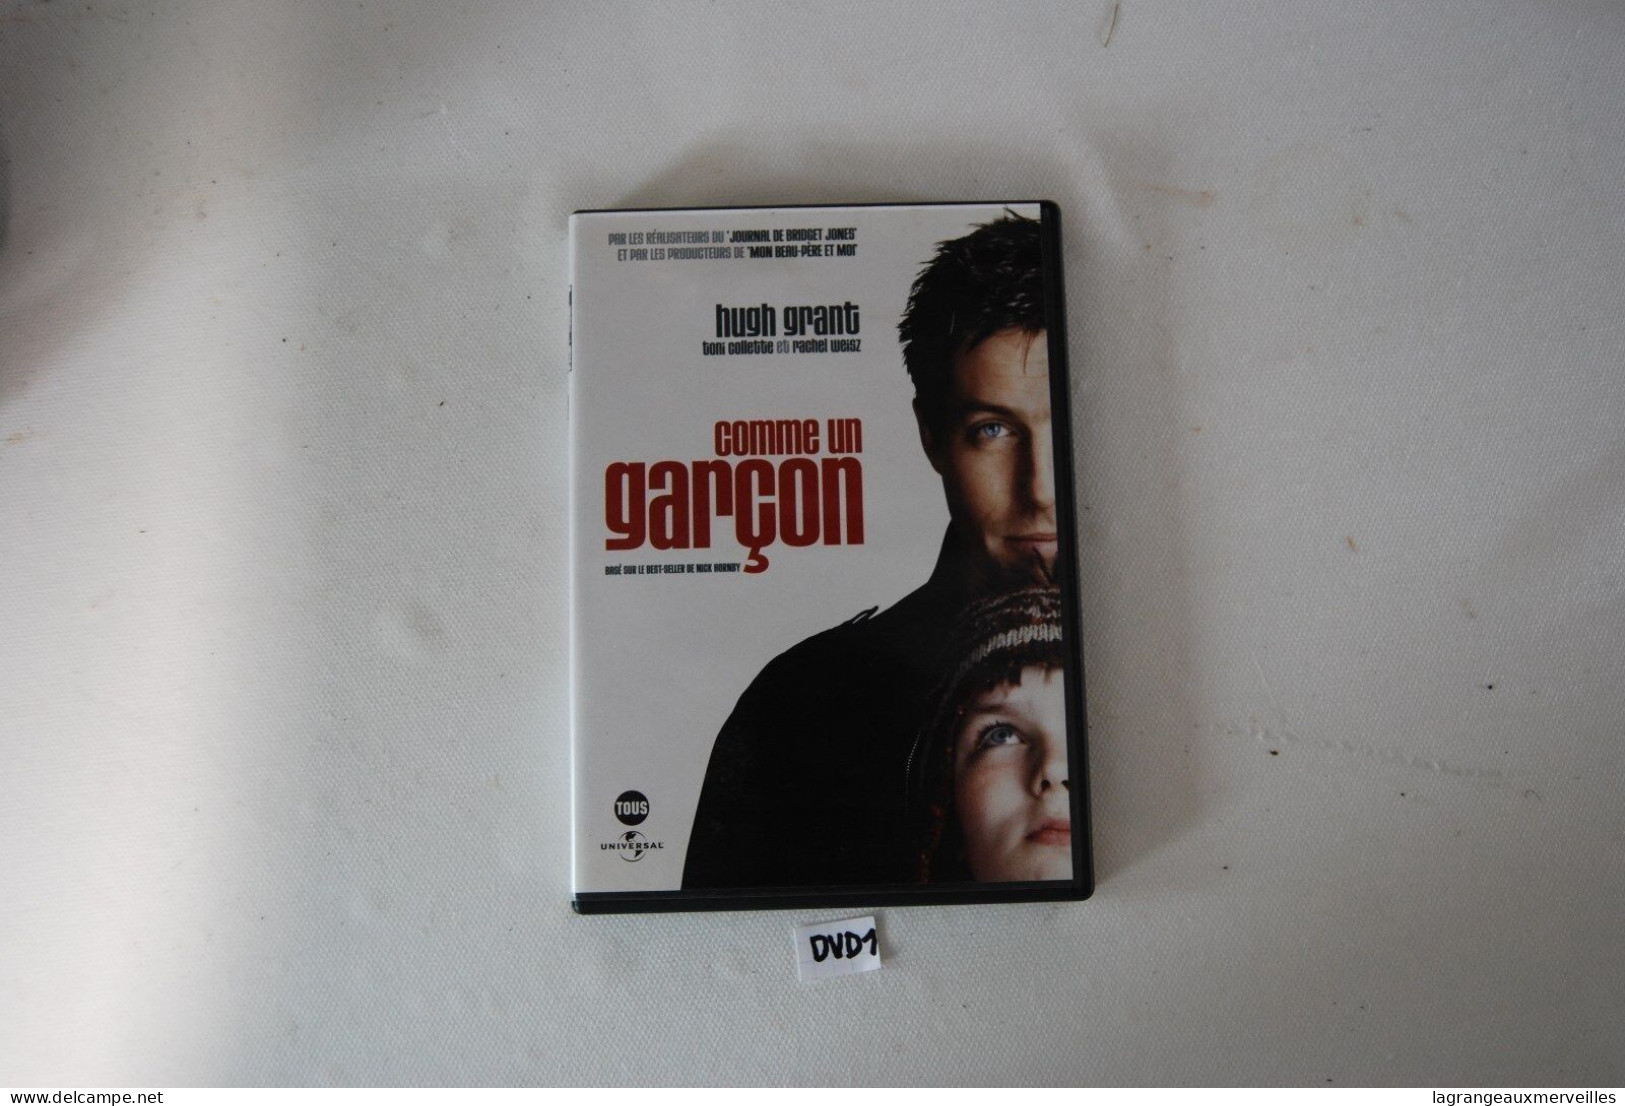 DVD 1 - COMME UN GARCON - HUGH GRANT - Familiari